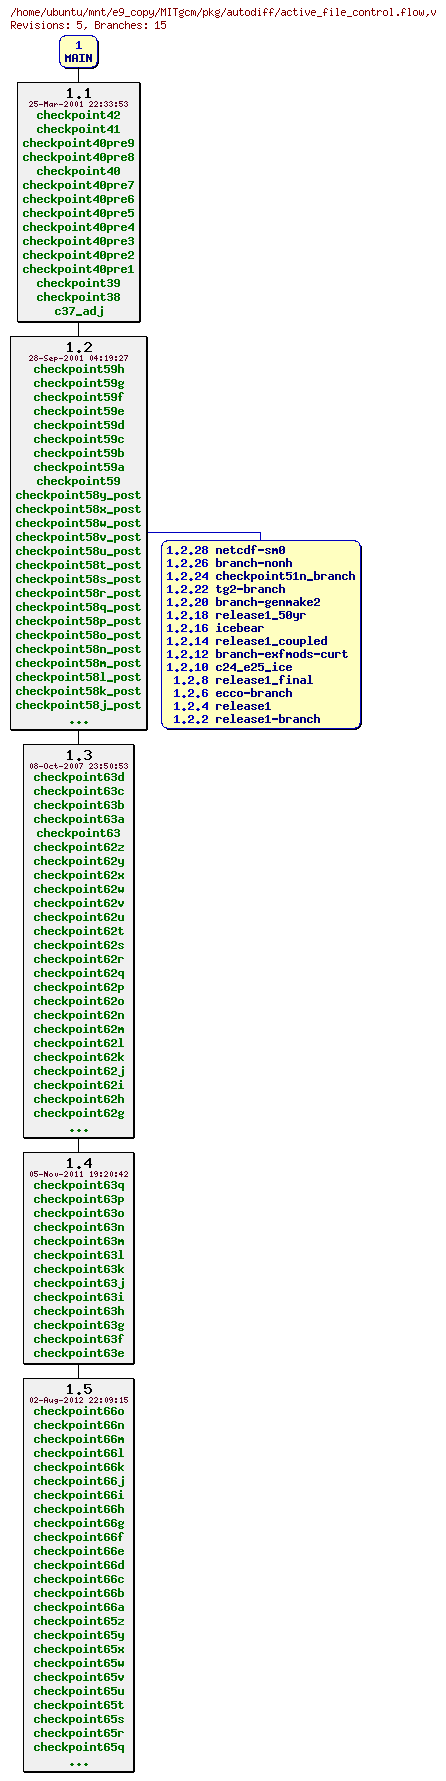 Revisions of MITgcm/pkg/autodiff/active_file_control.flow